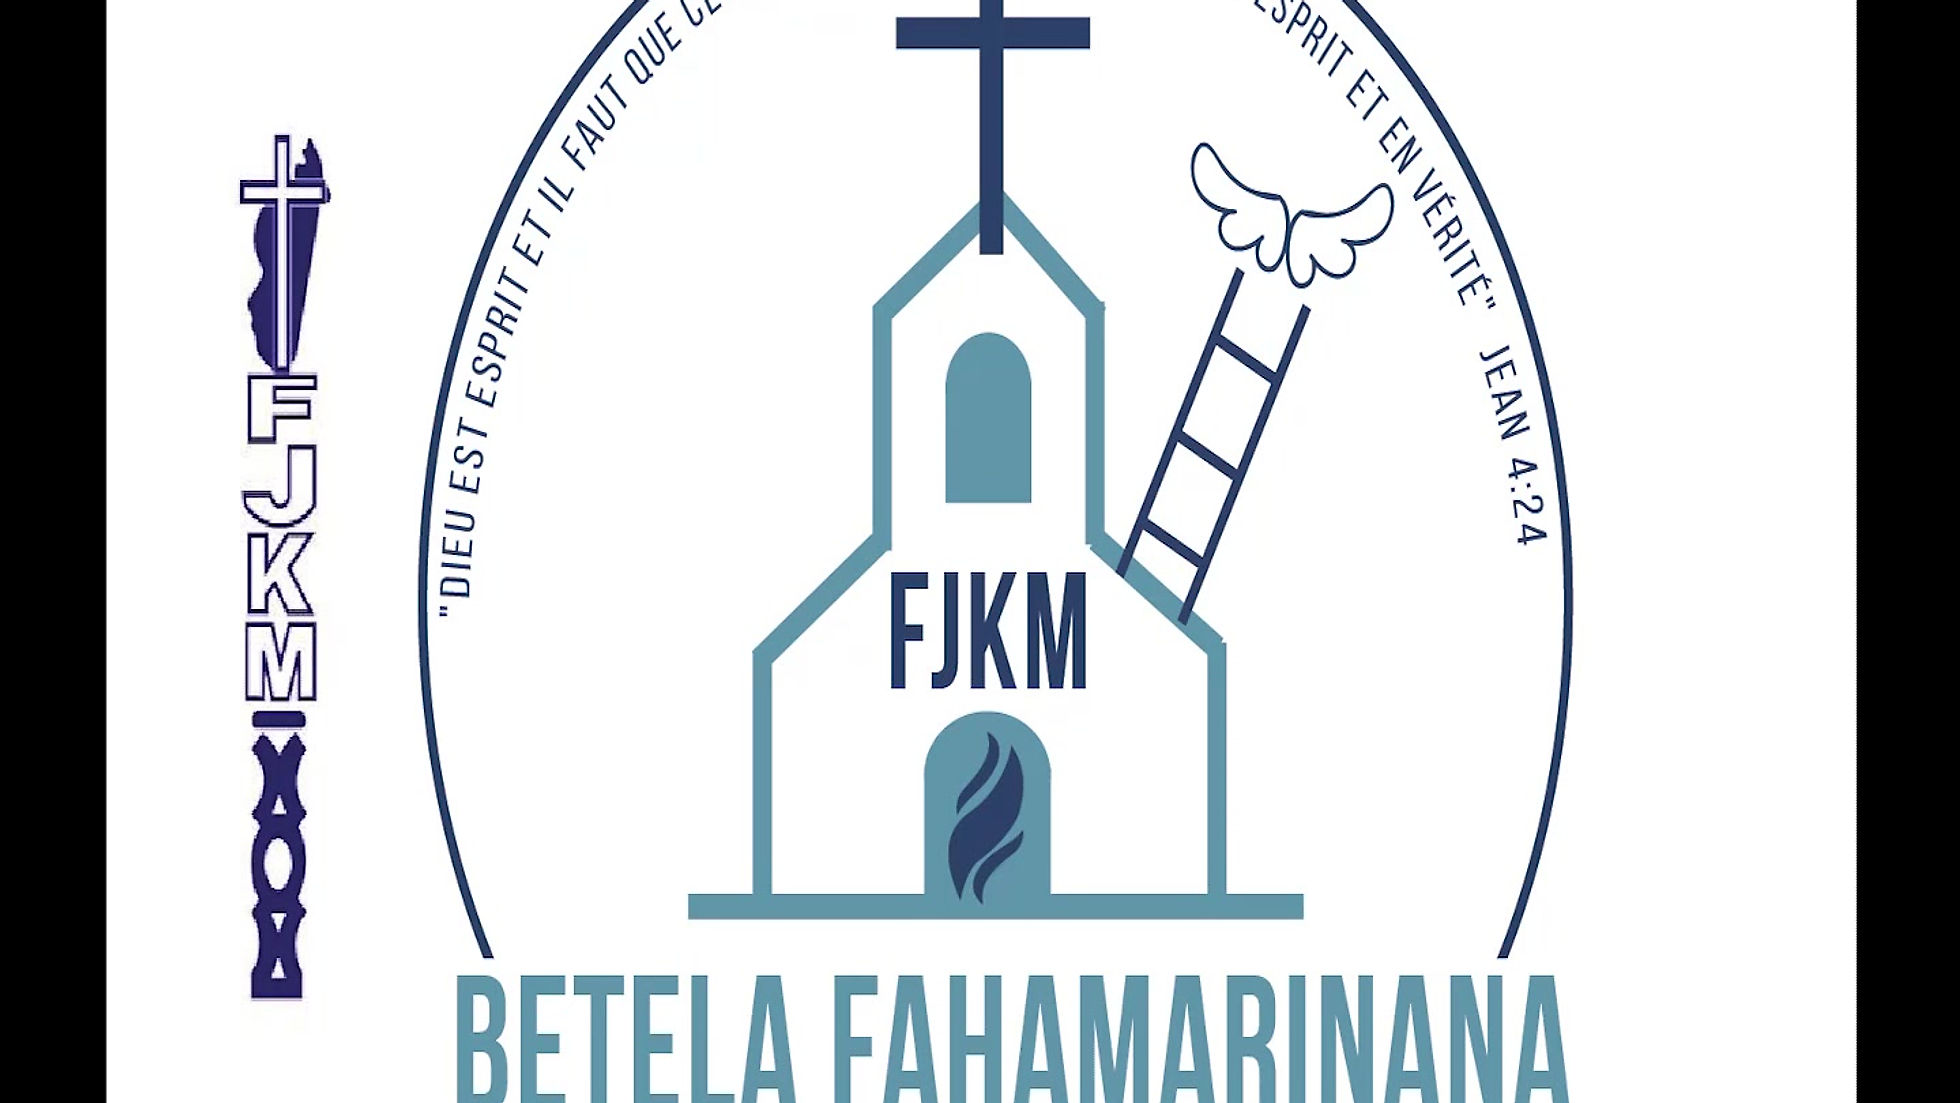 Inauguration FJKM Betela Fahamarinana Paris 03/06/17